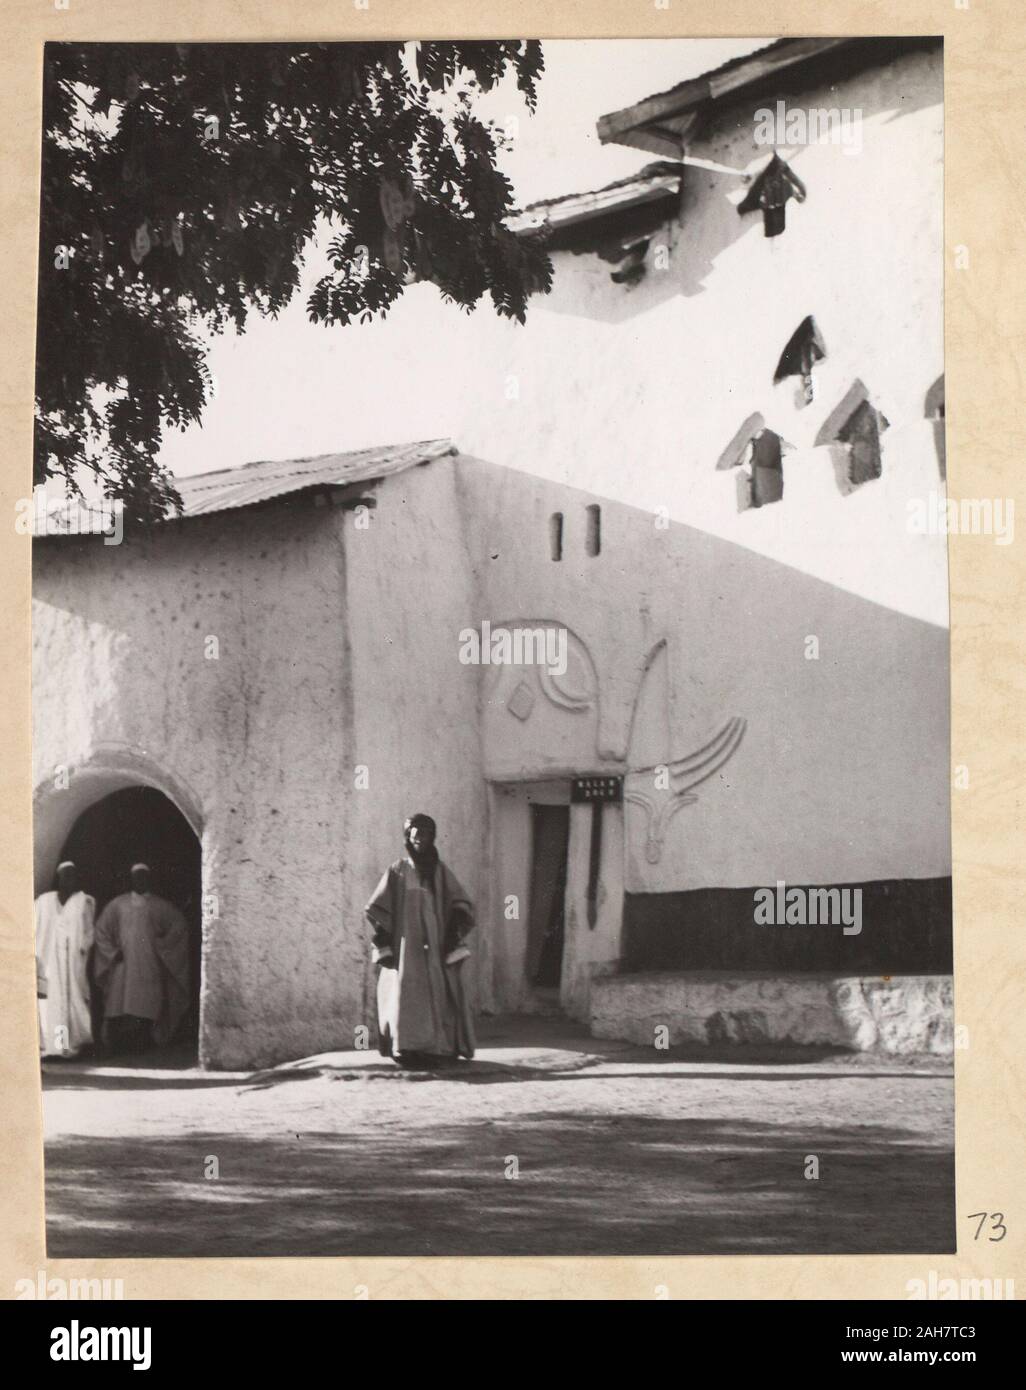 La Nigeria, la figura di distanza nella parte anteriore dell'edificio. La didascalia recita: "ALAM DOGO - una più cortese, dignitoso e gentile uomo - un altamente rispettato CITTADINO DI ZARIA', 1960. 2005/010/1/7/73. Foto Stock